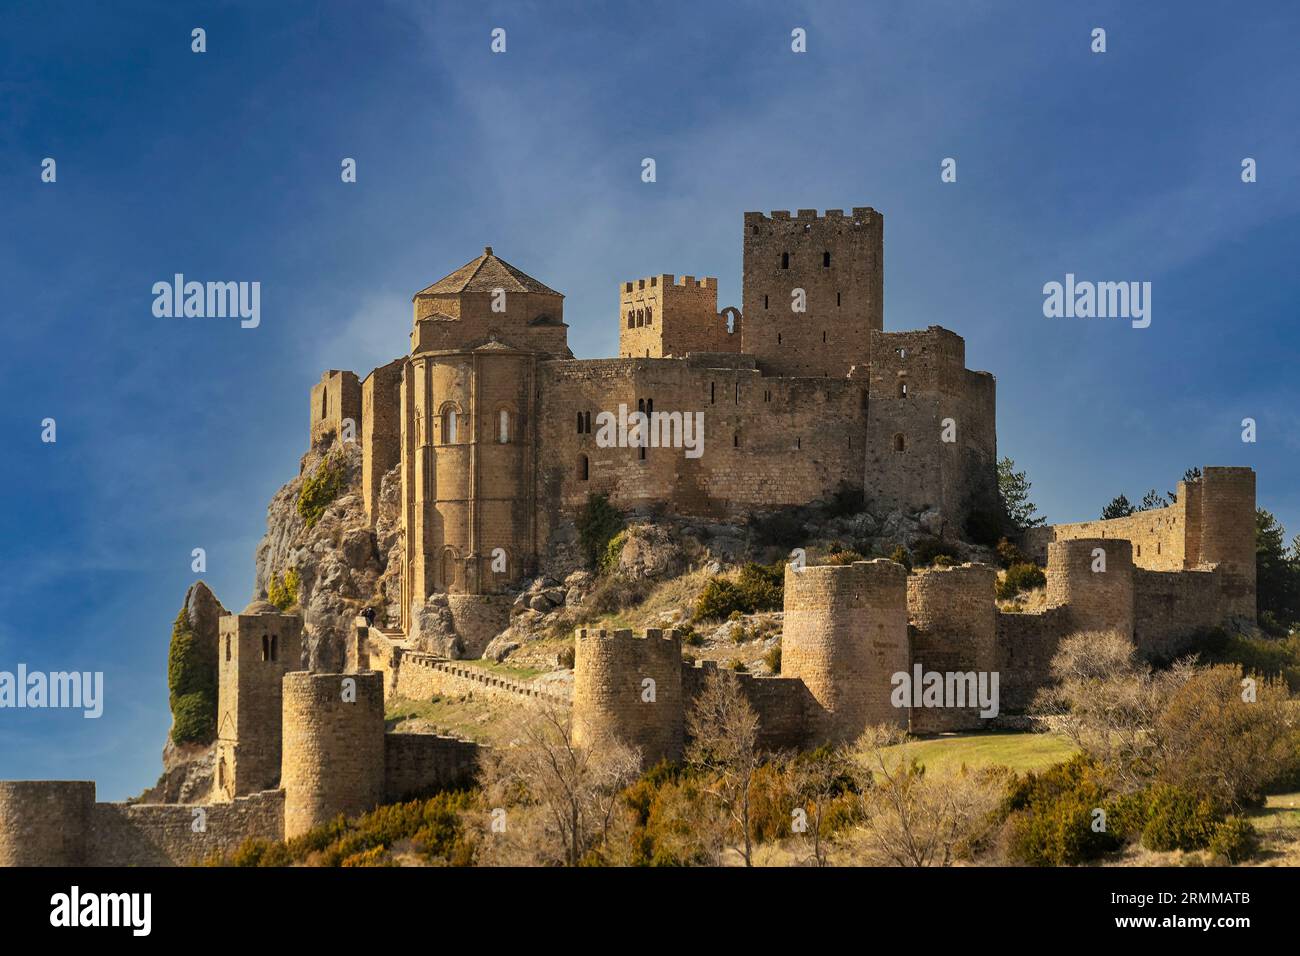 Tauchen Sie ein in die mittelalterliche Schönheit Spaniens mit diesem fesselnden Foto der imposanten Burg Lorraine in Huesca. Stockfoto